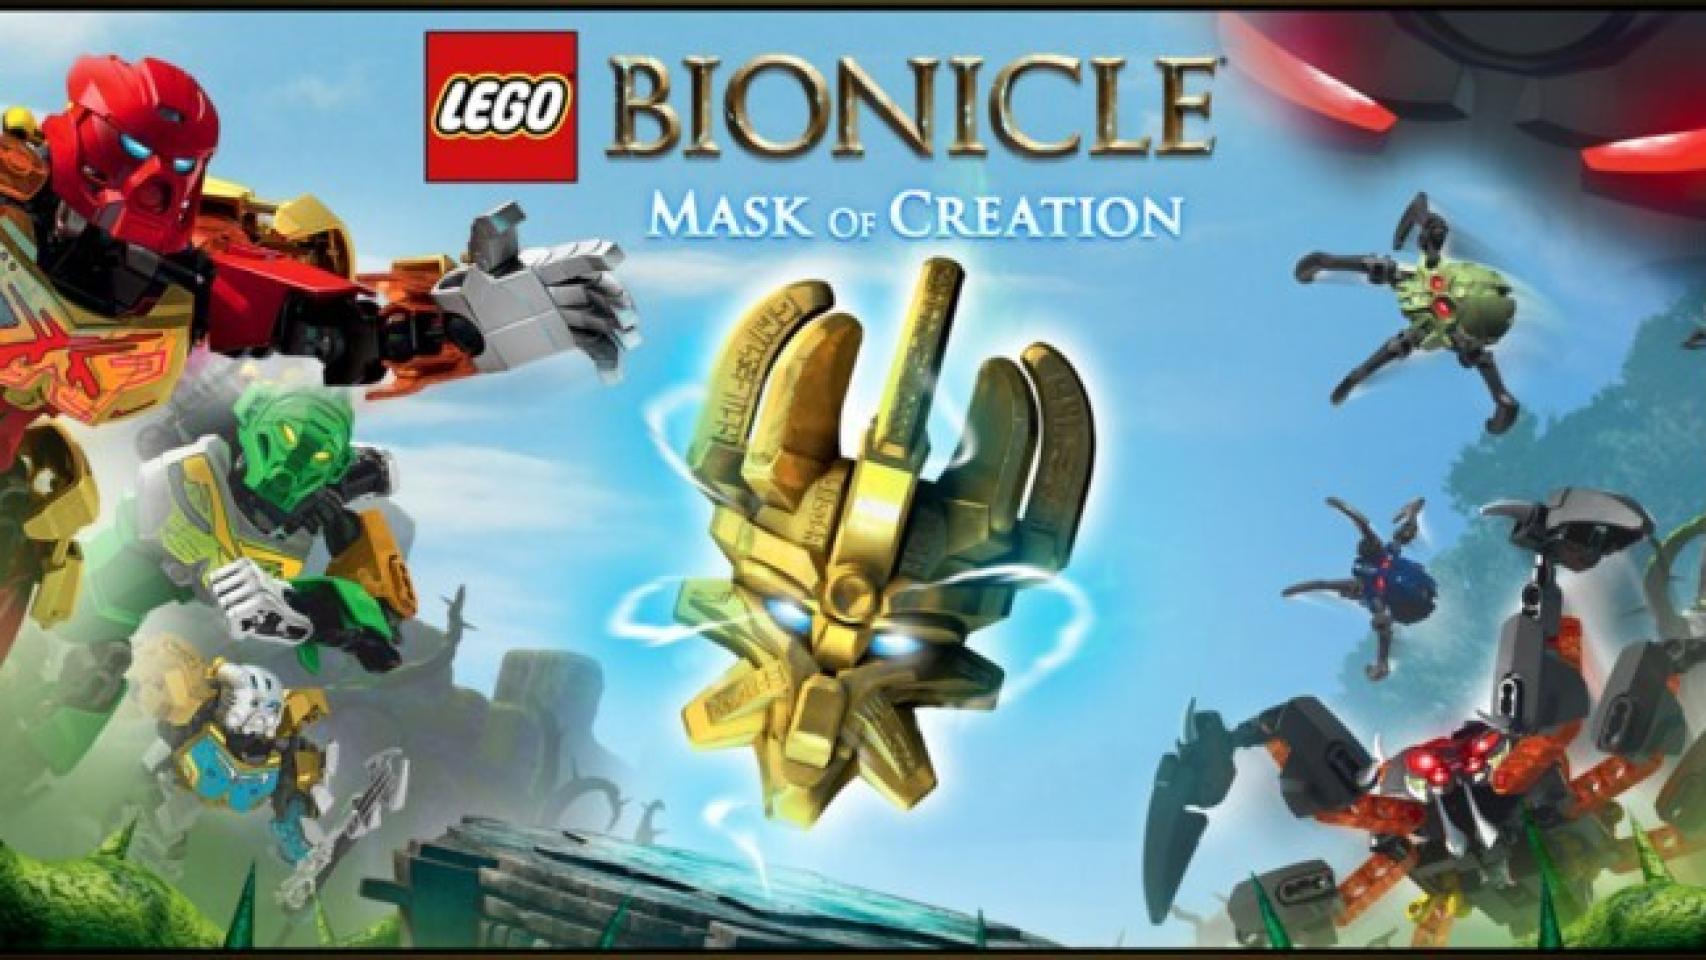 Lego Bionicle, vuelve a combatir con los héroes de la saga